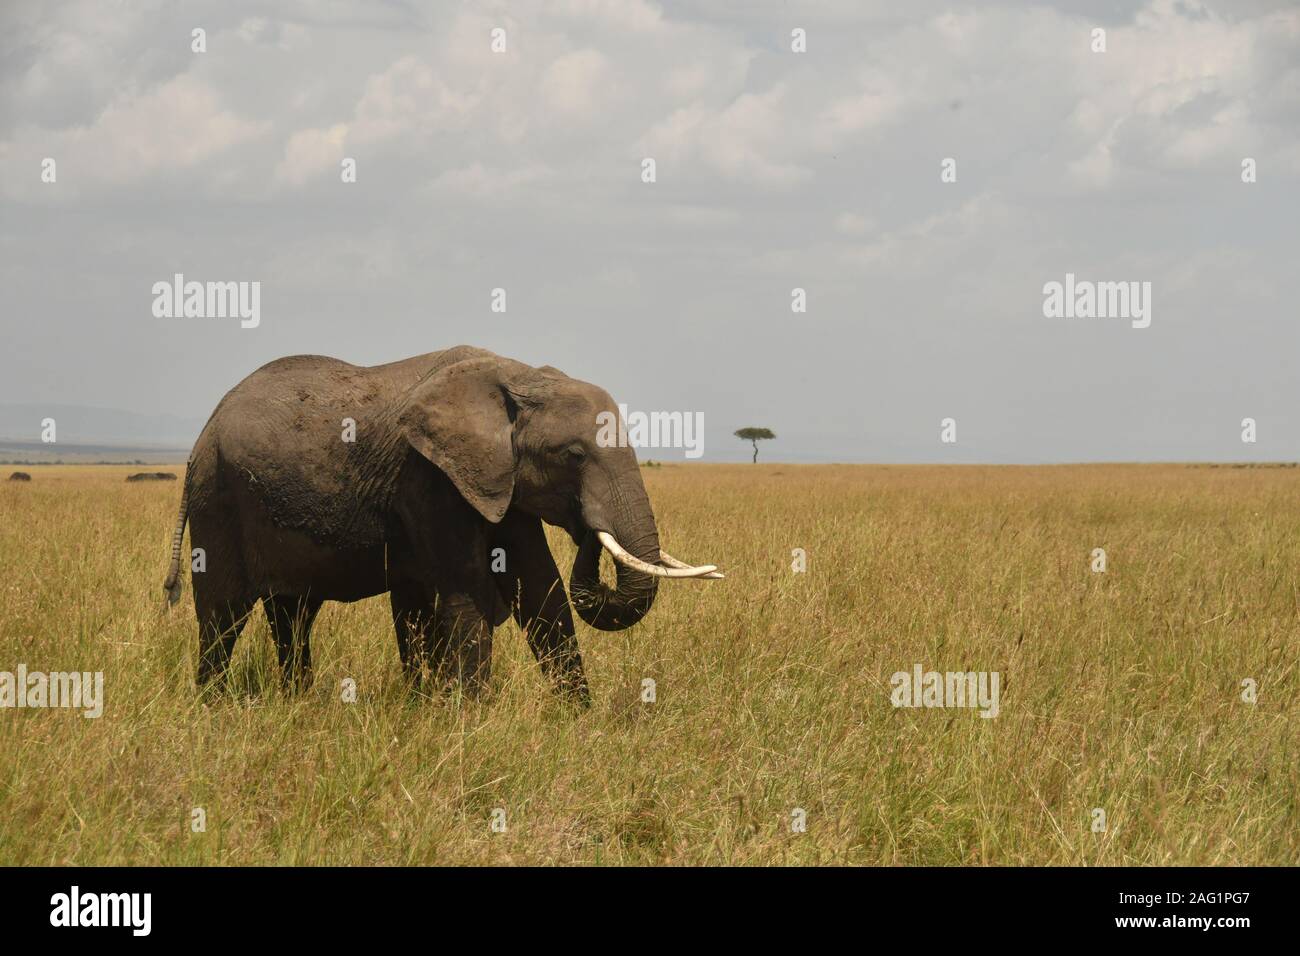 Ein Elefant mit dem Rüssel Gras in seinen Mund zu essen zu heben. Ein einsamer Akazie in der fernen Hintergrund Stockfoto